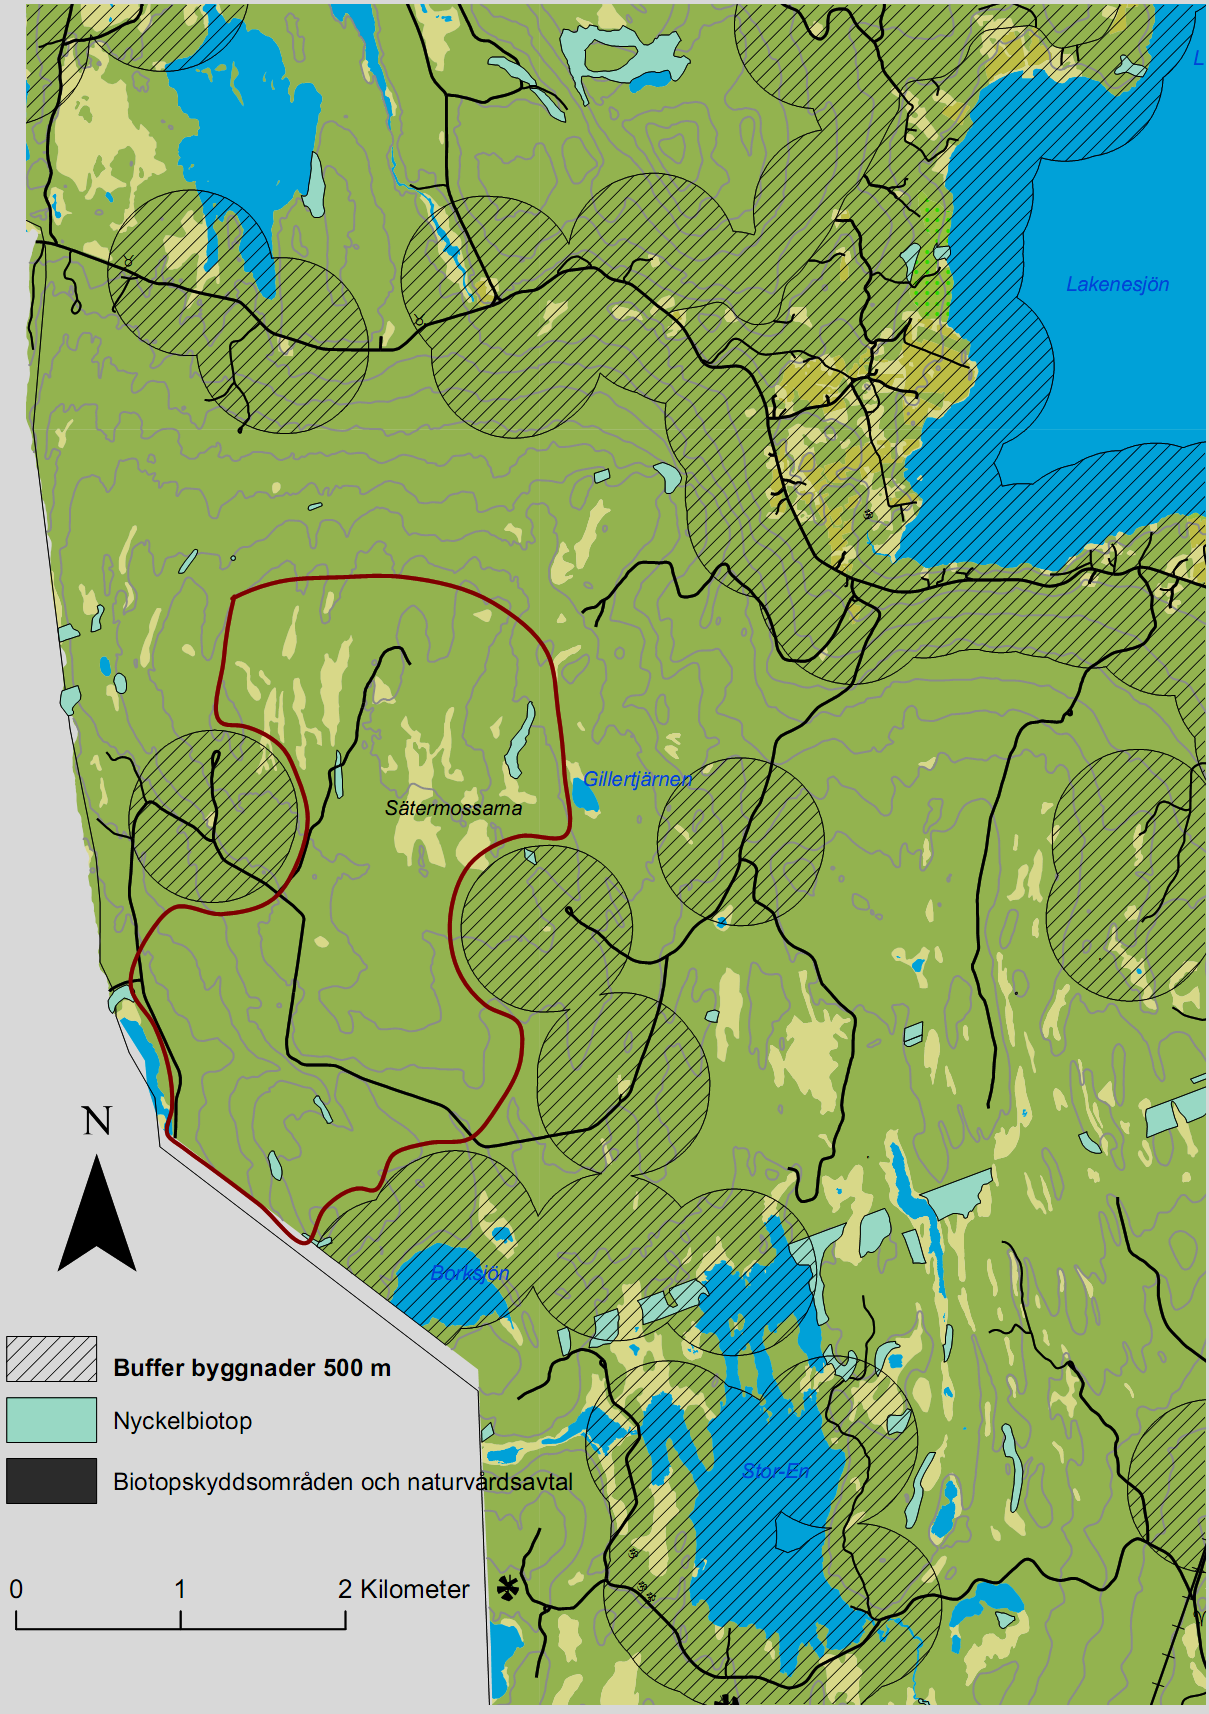 10.4 Område 4: SV Lakenesjön Figur 15 Karta vindområde SV Lakenesjön Lokalisering Området som ligger sydväst om Lakenesjön gränsar i väster mot Sunne kommun.